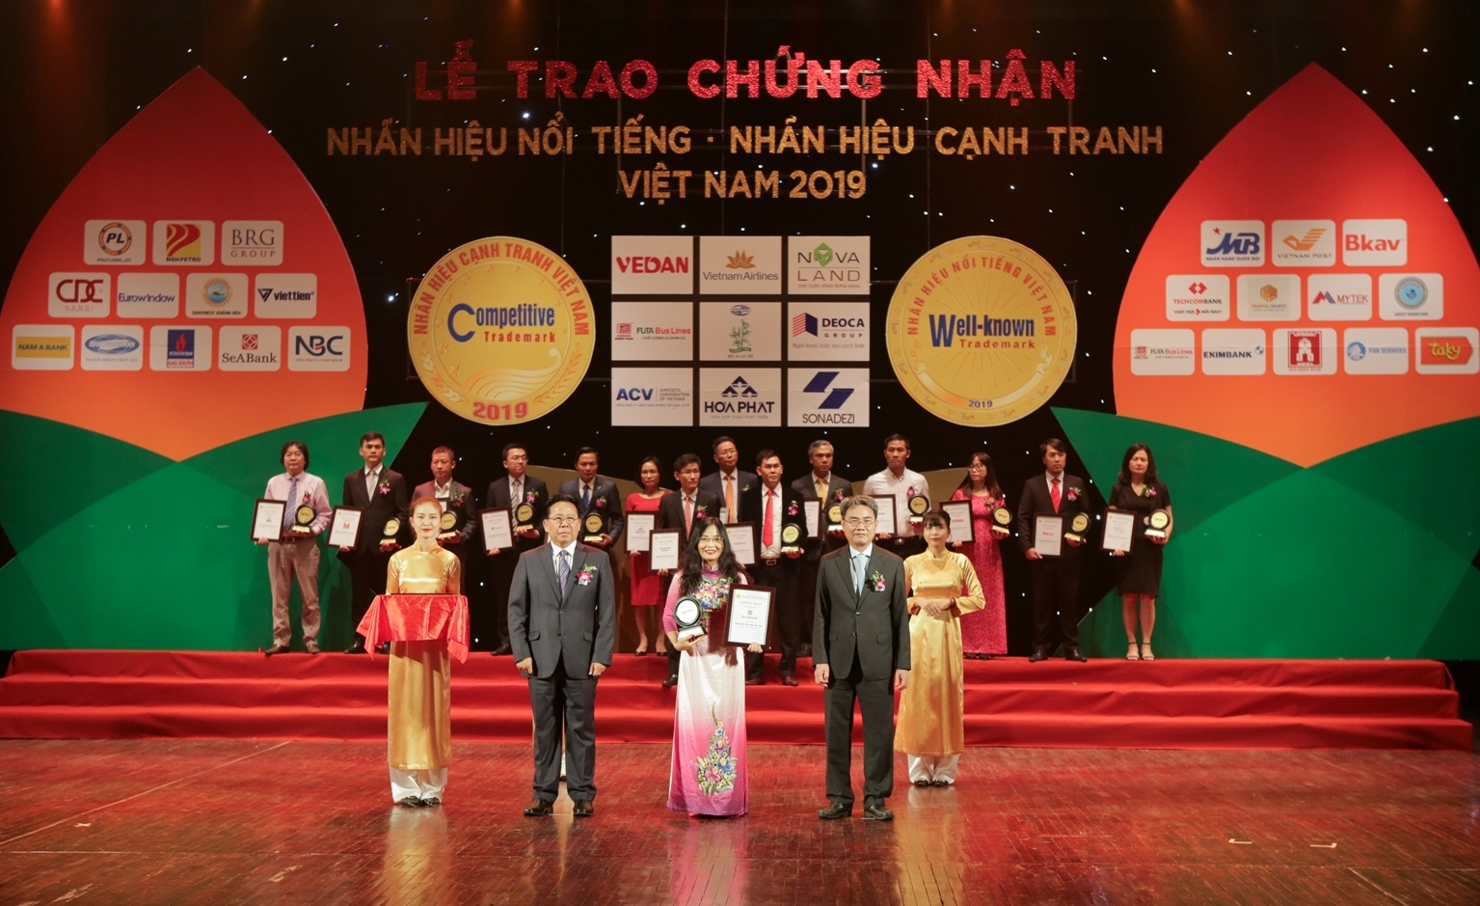 Bà Trần Thị Thanh Thủy – Phó Tổng giám đốc SeABank lên nhận giải thưởng “Nhãn hiệu nổi tiếng – Nhãn hiệu cạnh tranh năm 2019”. 